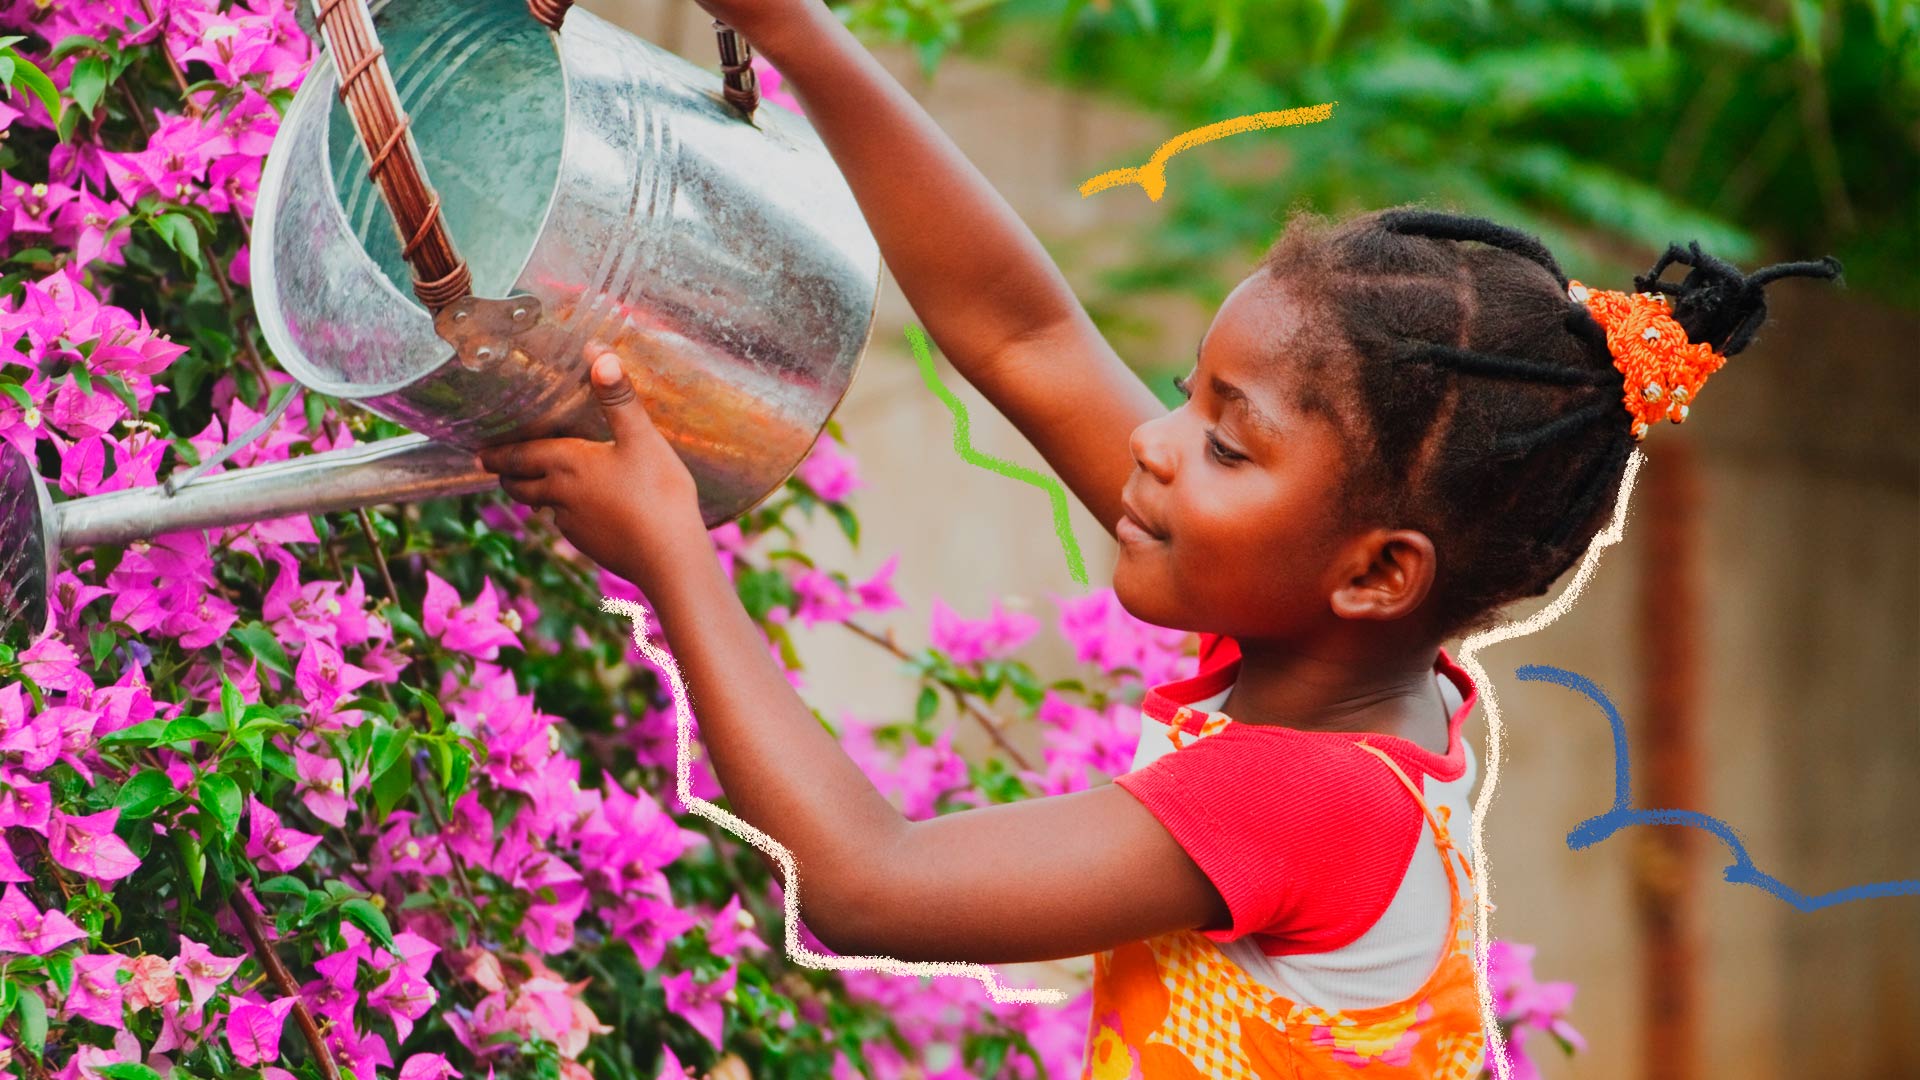 Imagem de menina negra sorrindo enquanto rega as flores em um jardim. Texto sobre educação ambiental